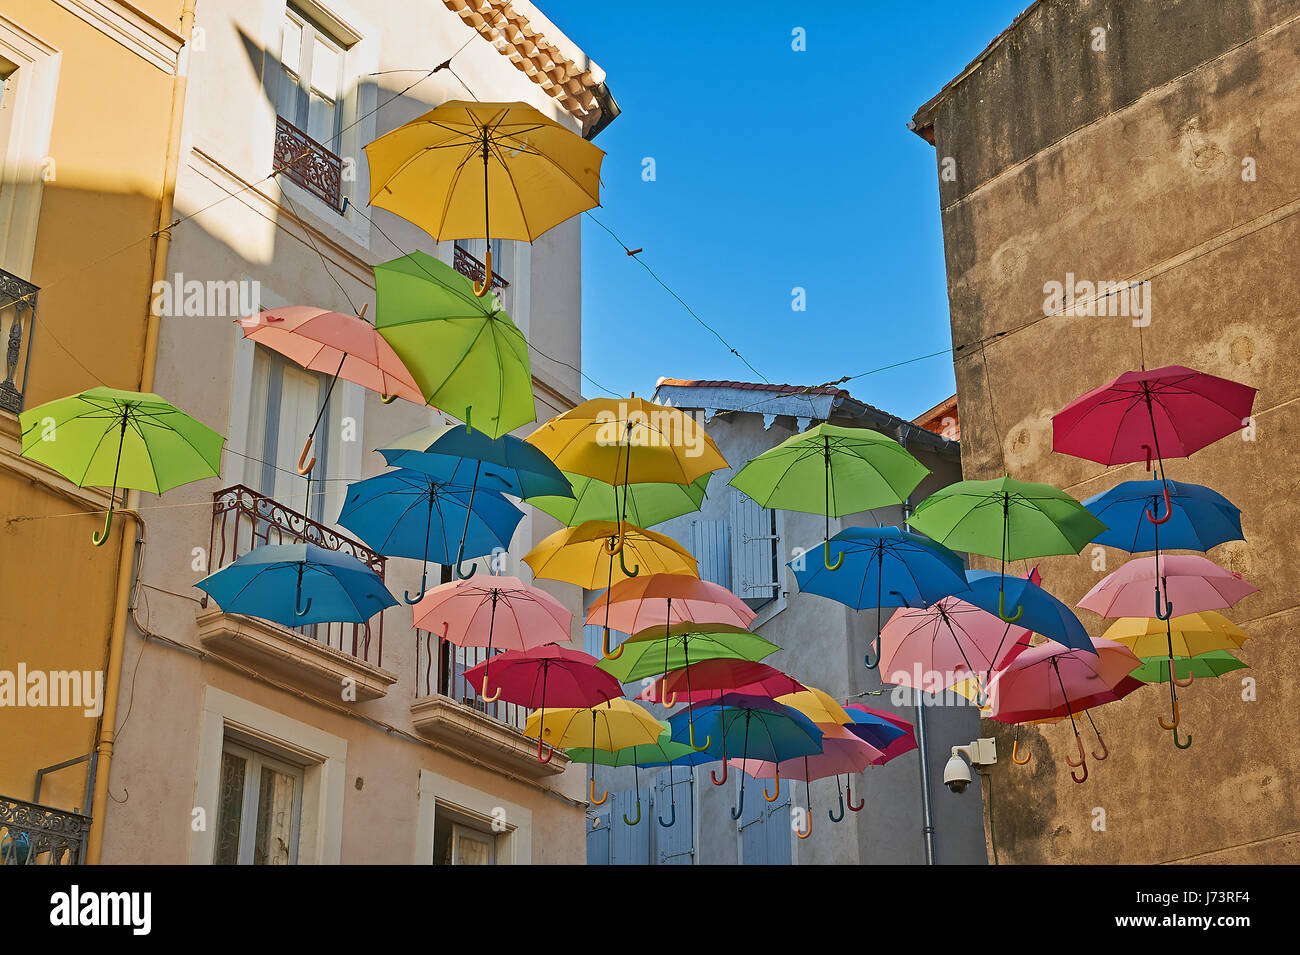 La pendaison parasols colorés entre les bâtiments au-dessus d'une rue dans la vieille ville de Béziers, France Banque D'Images